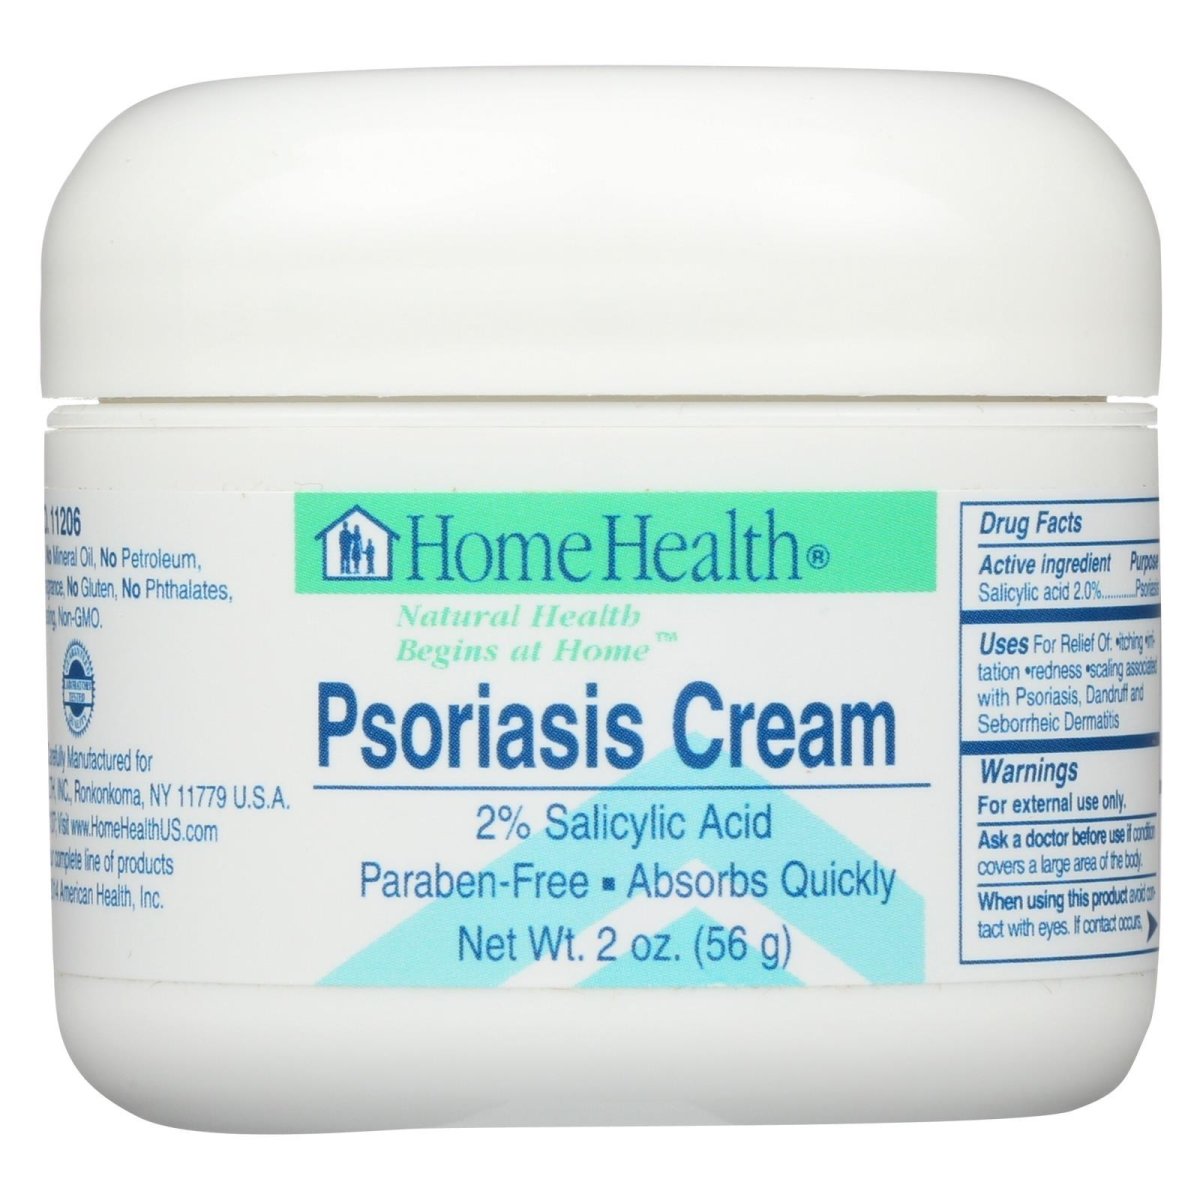 Psoriasis Cream 2% Salicyclic